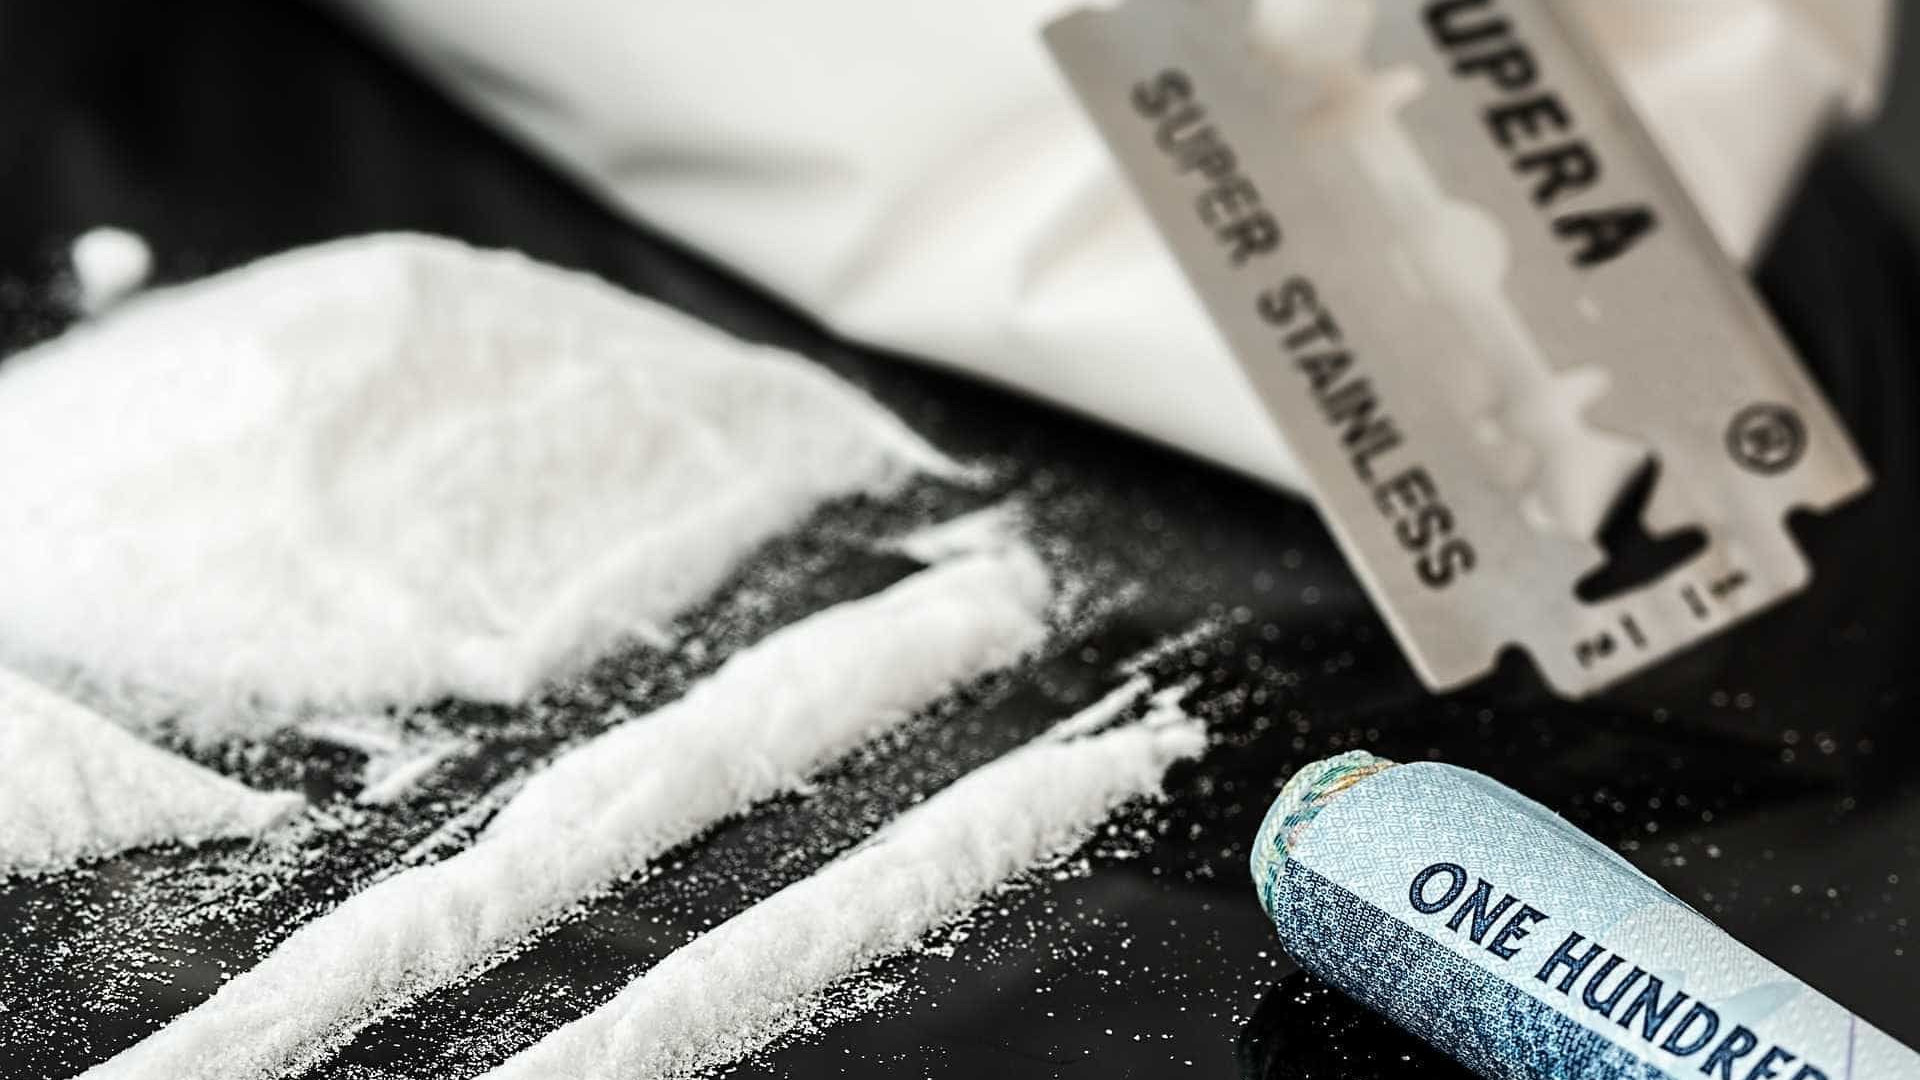 Português detido em maior apreensão de cocaína desde início do século